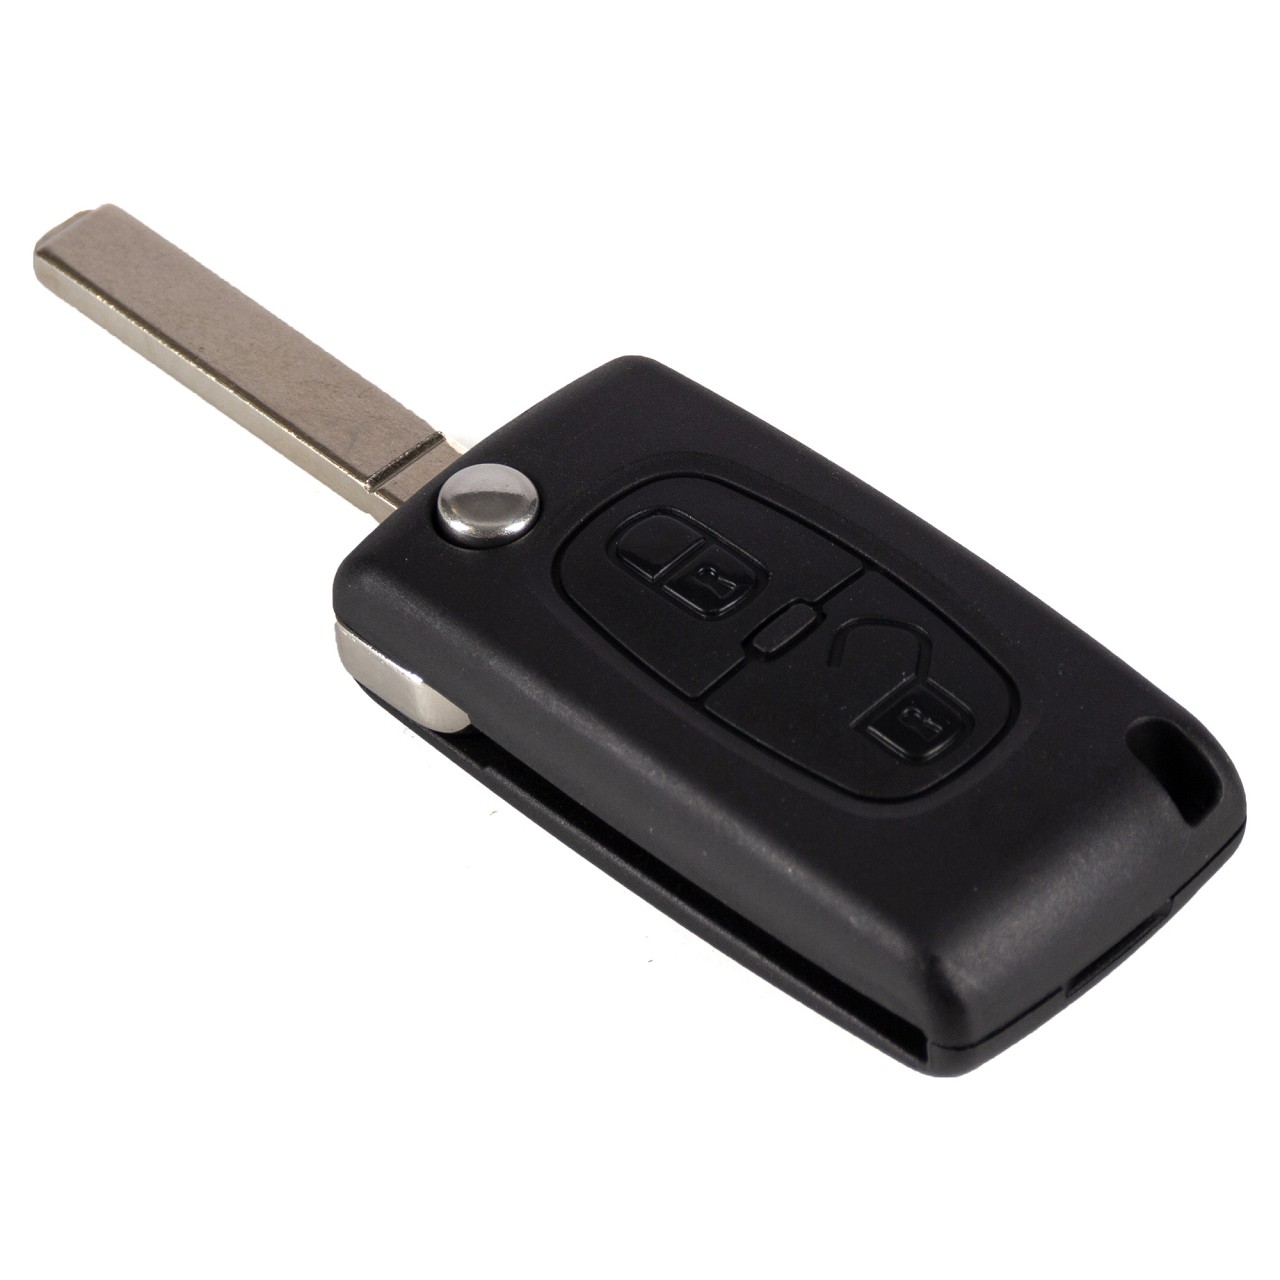 Aussenspiegel Verstellung Schalter Knopf Taste für Peugeot 1007 Partner I  II 